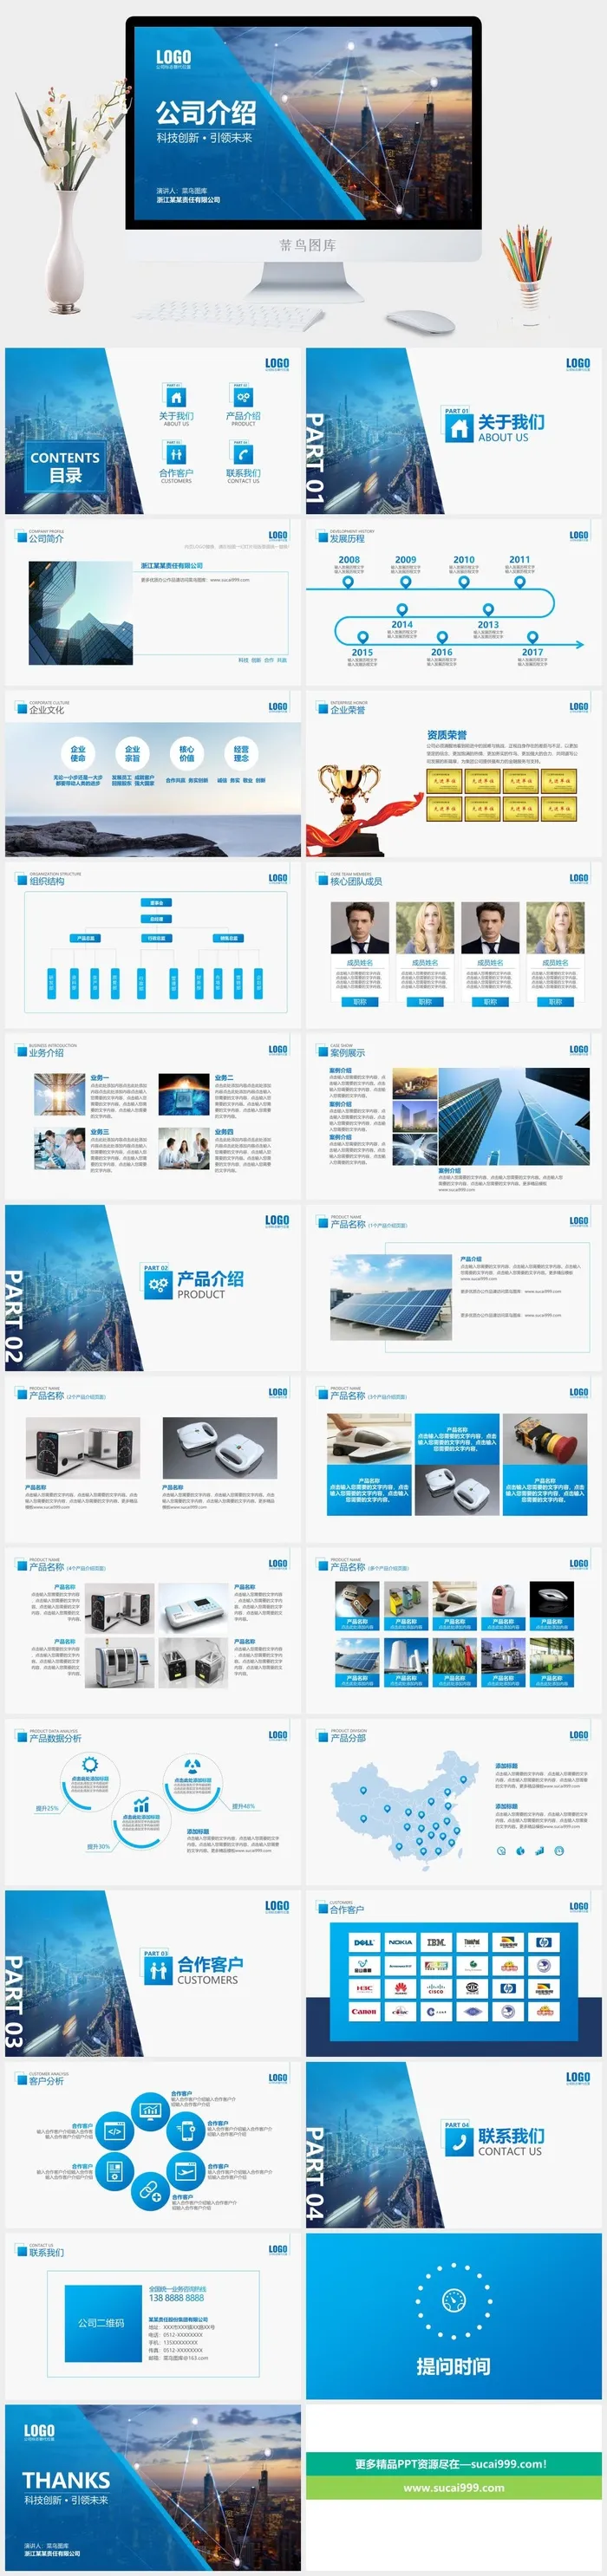 蓝色科技简约公司介绍企业宣传商务合作ppt模板